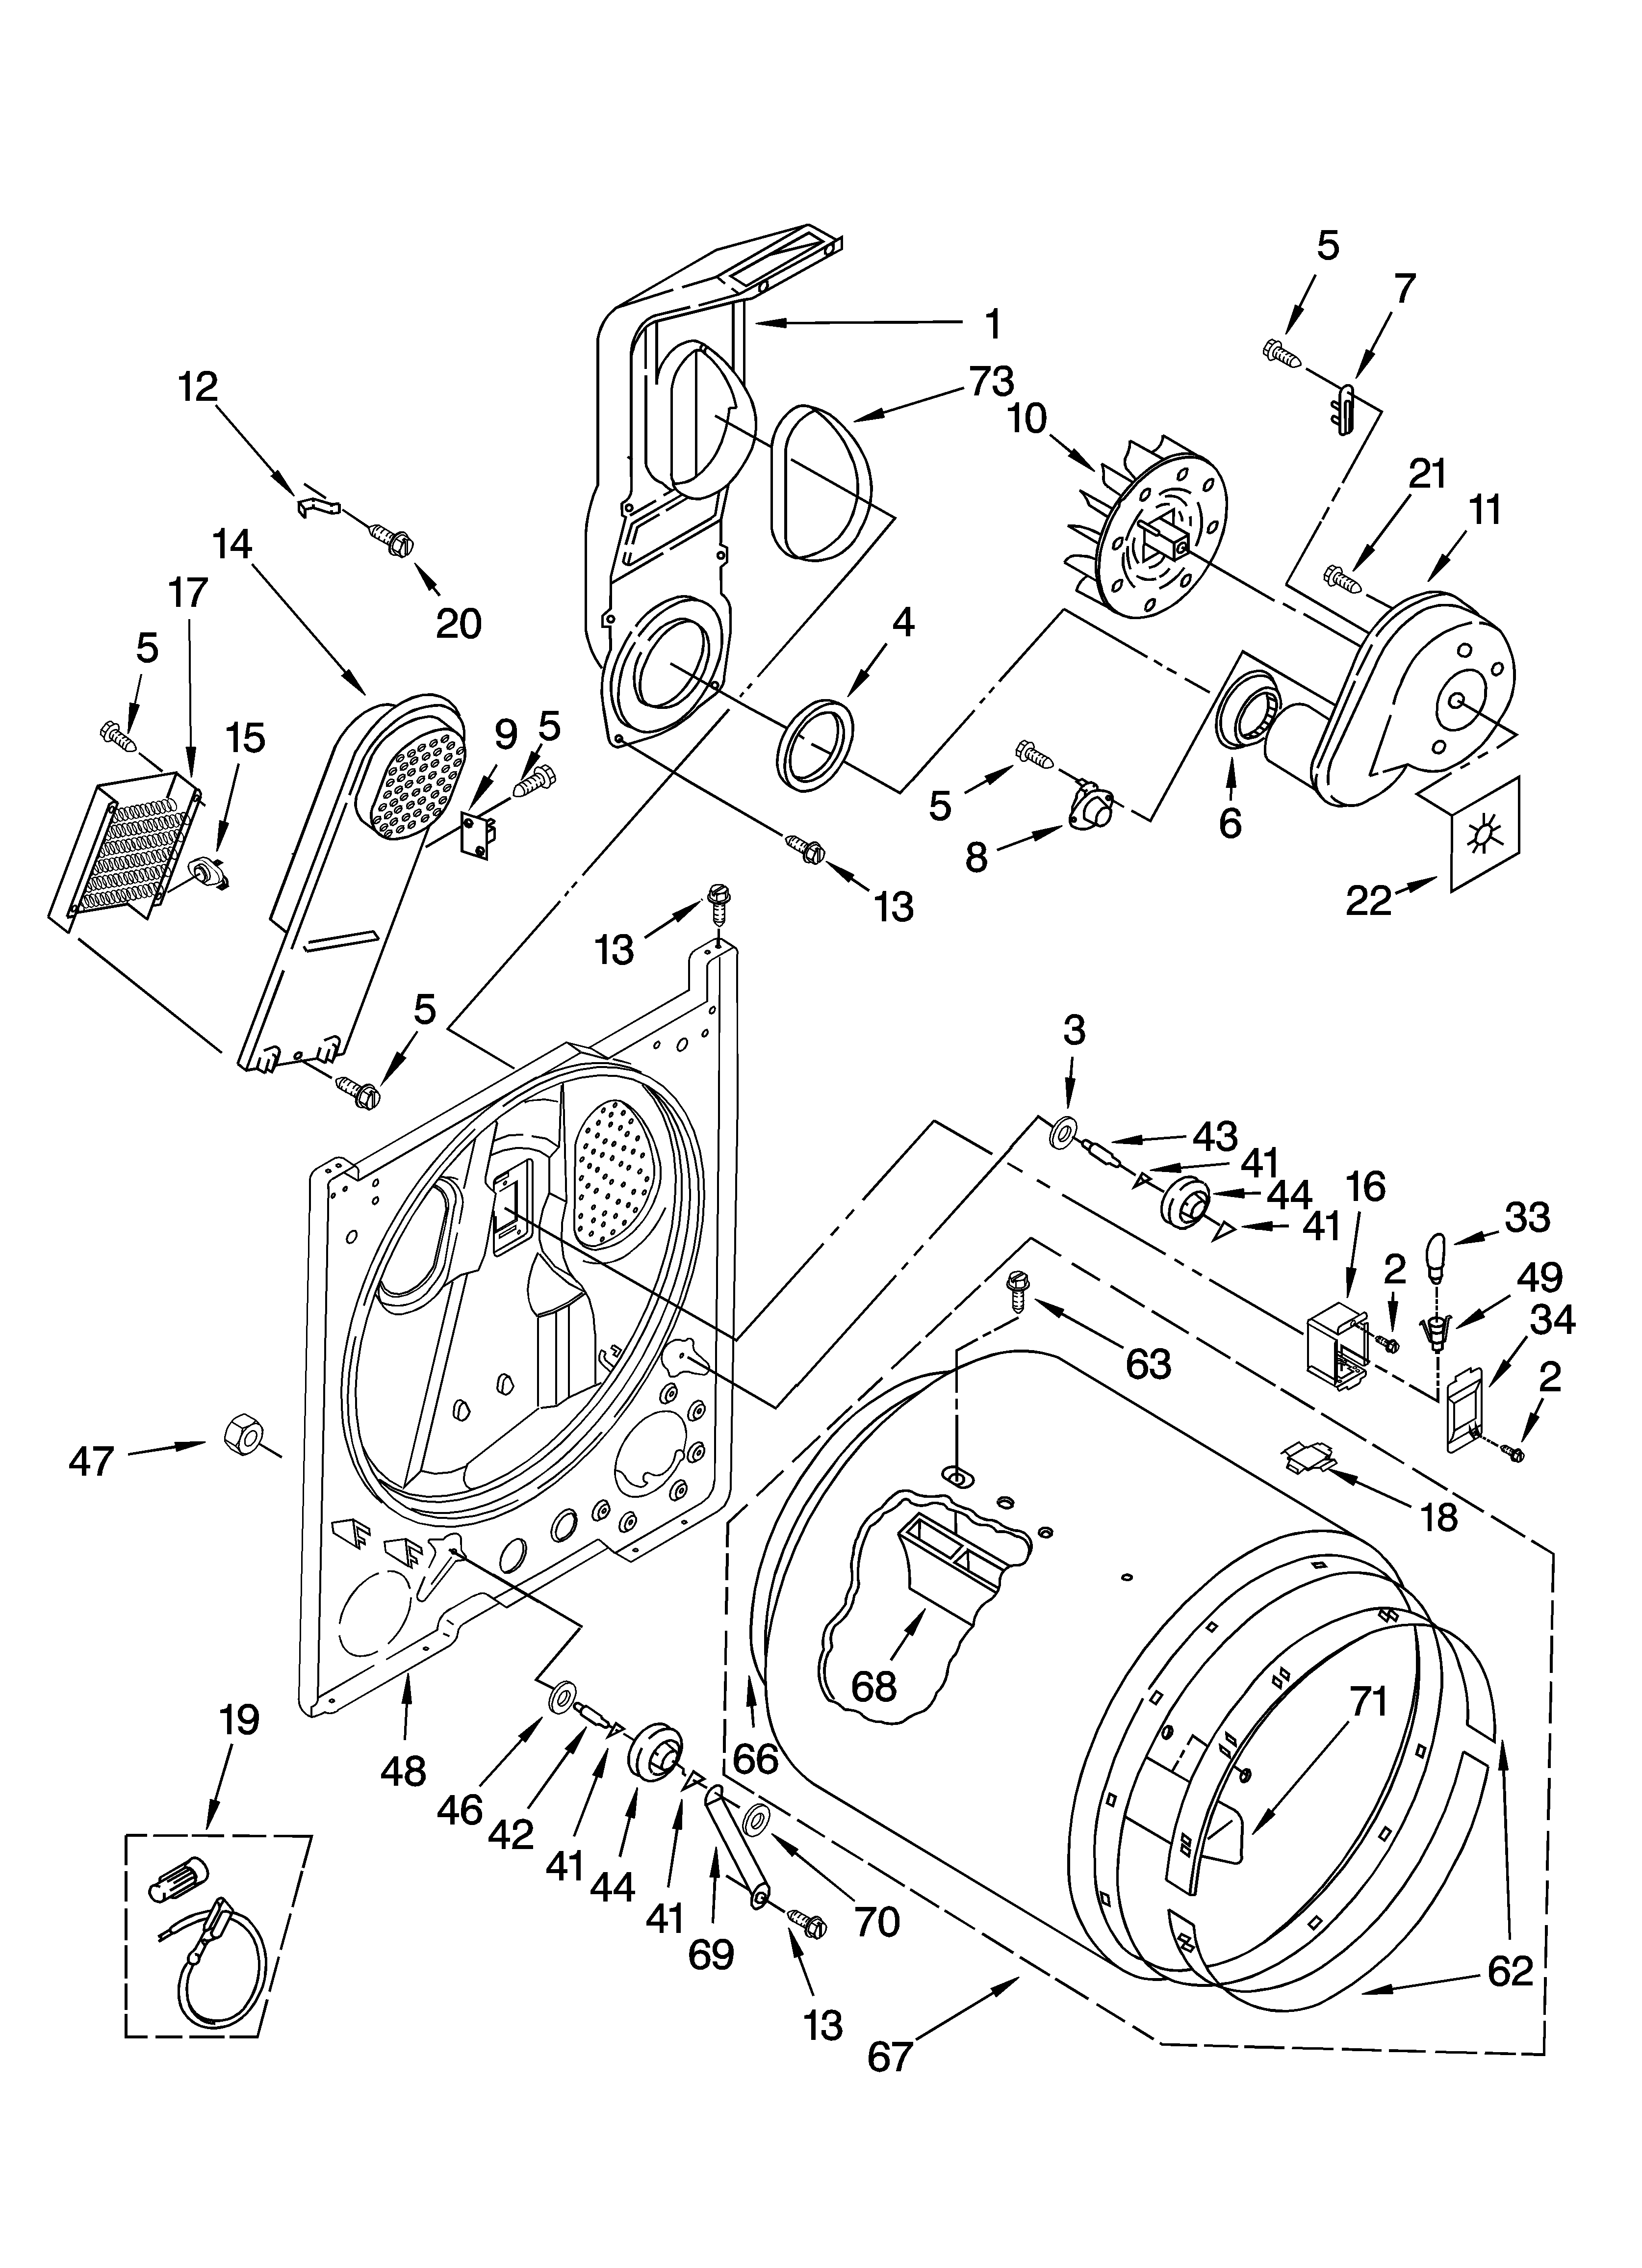 Bulkhead Parts Diagram  U0026 Parts List For Model Leq9030pq0